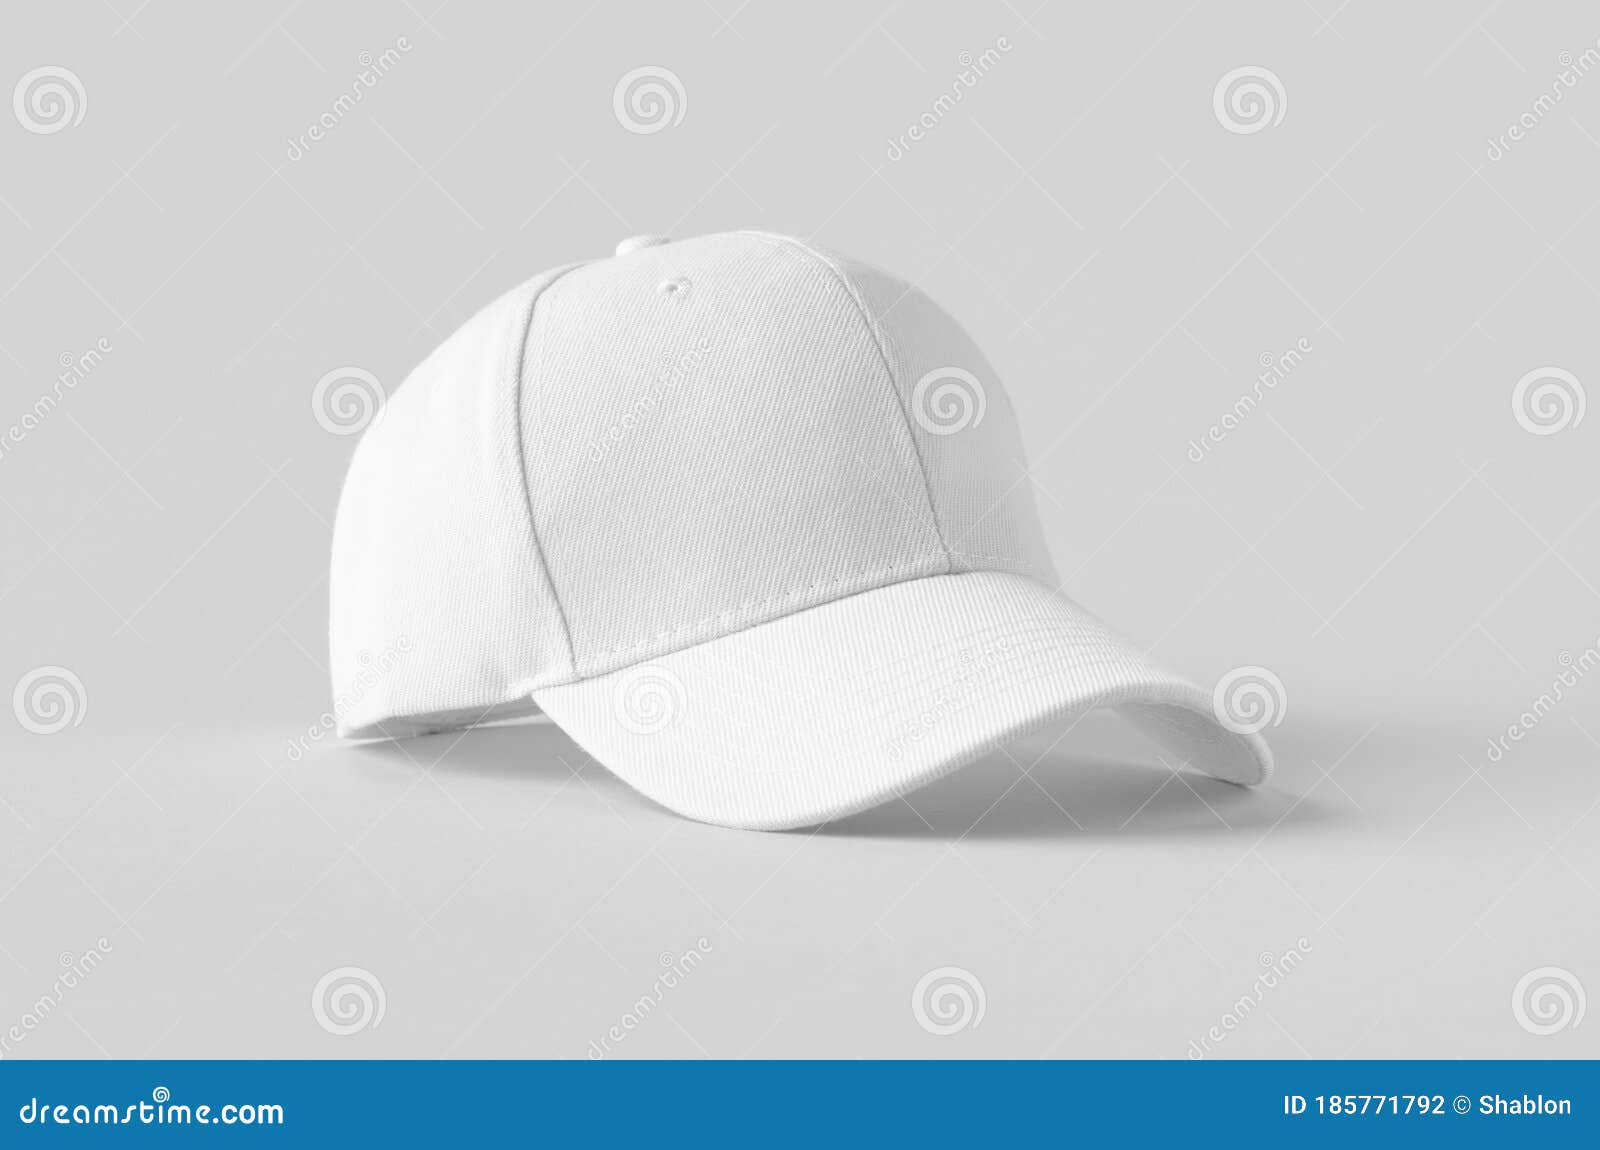 White Baseball Cap Mockup on a Grey Background Stock Photo - Image of ...